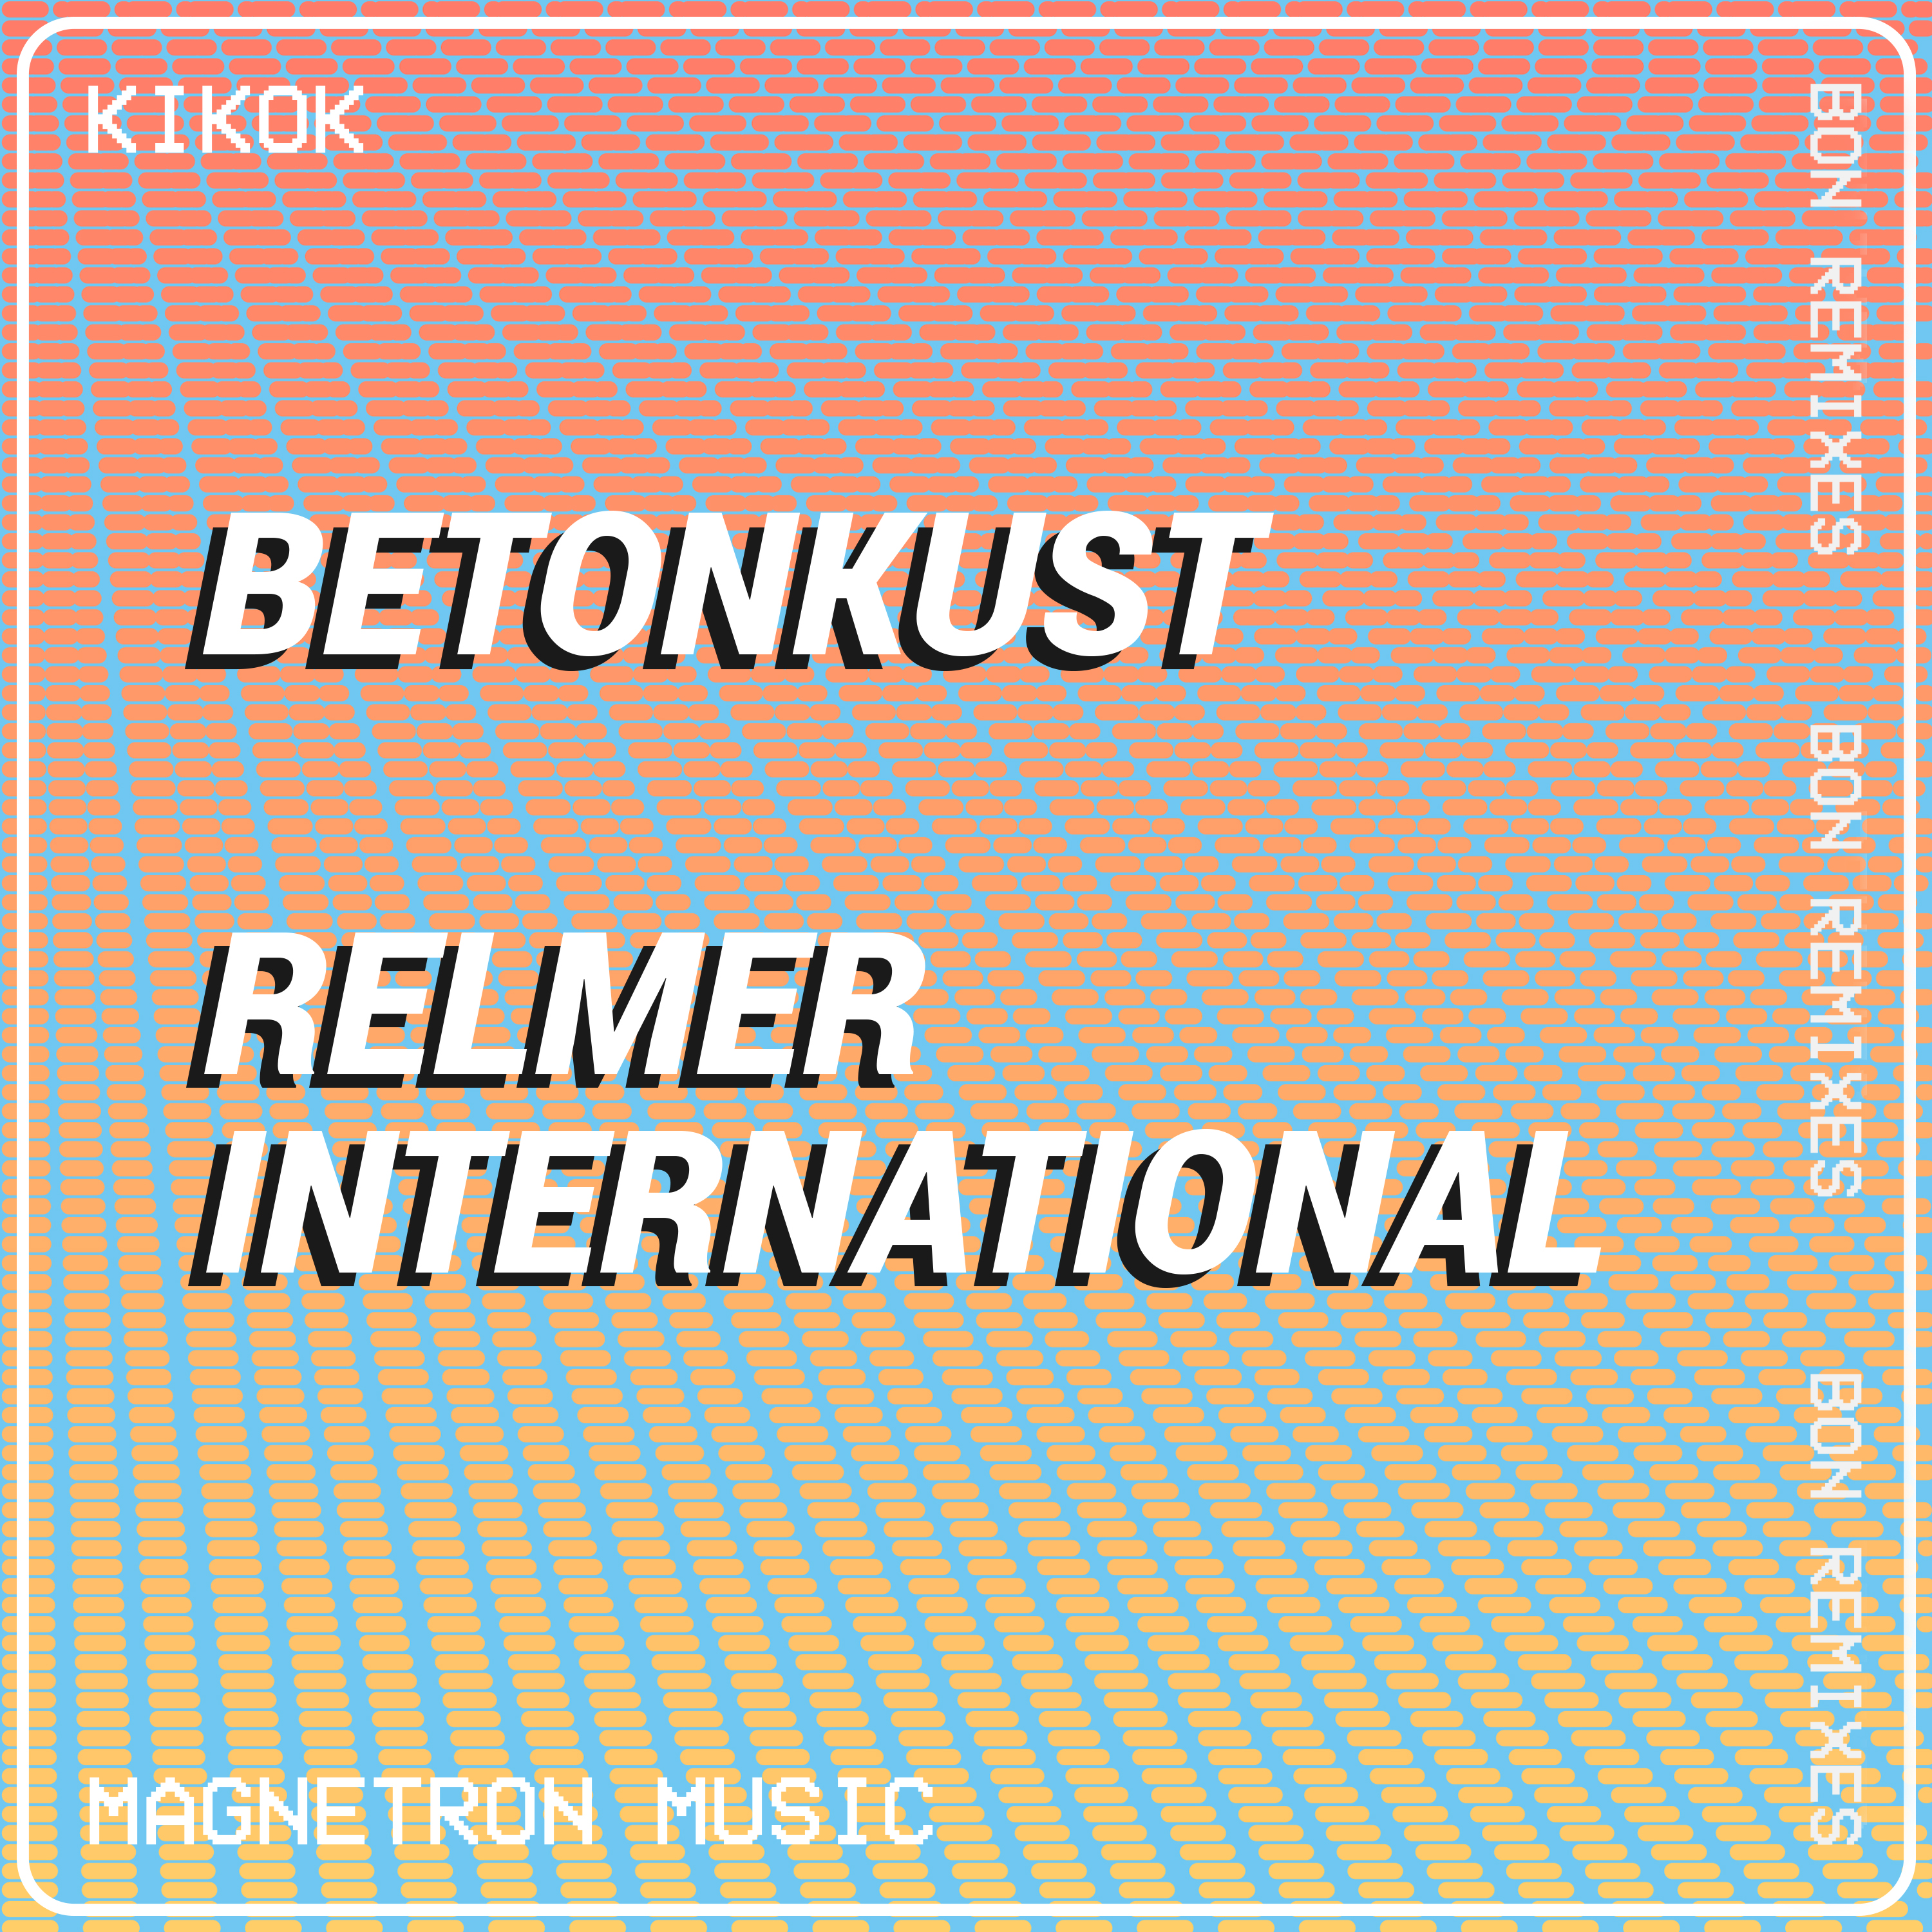 remix_kikok_bon